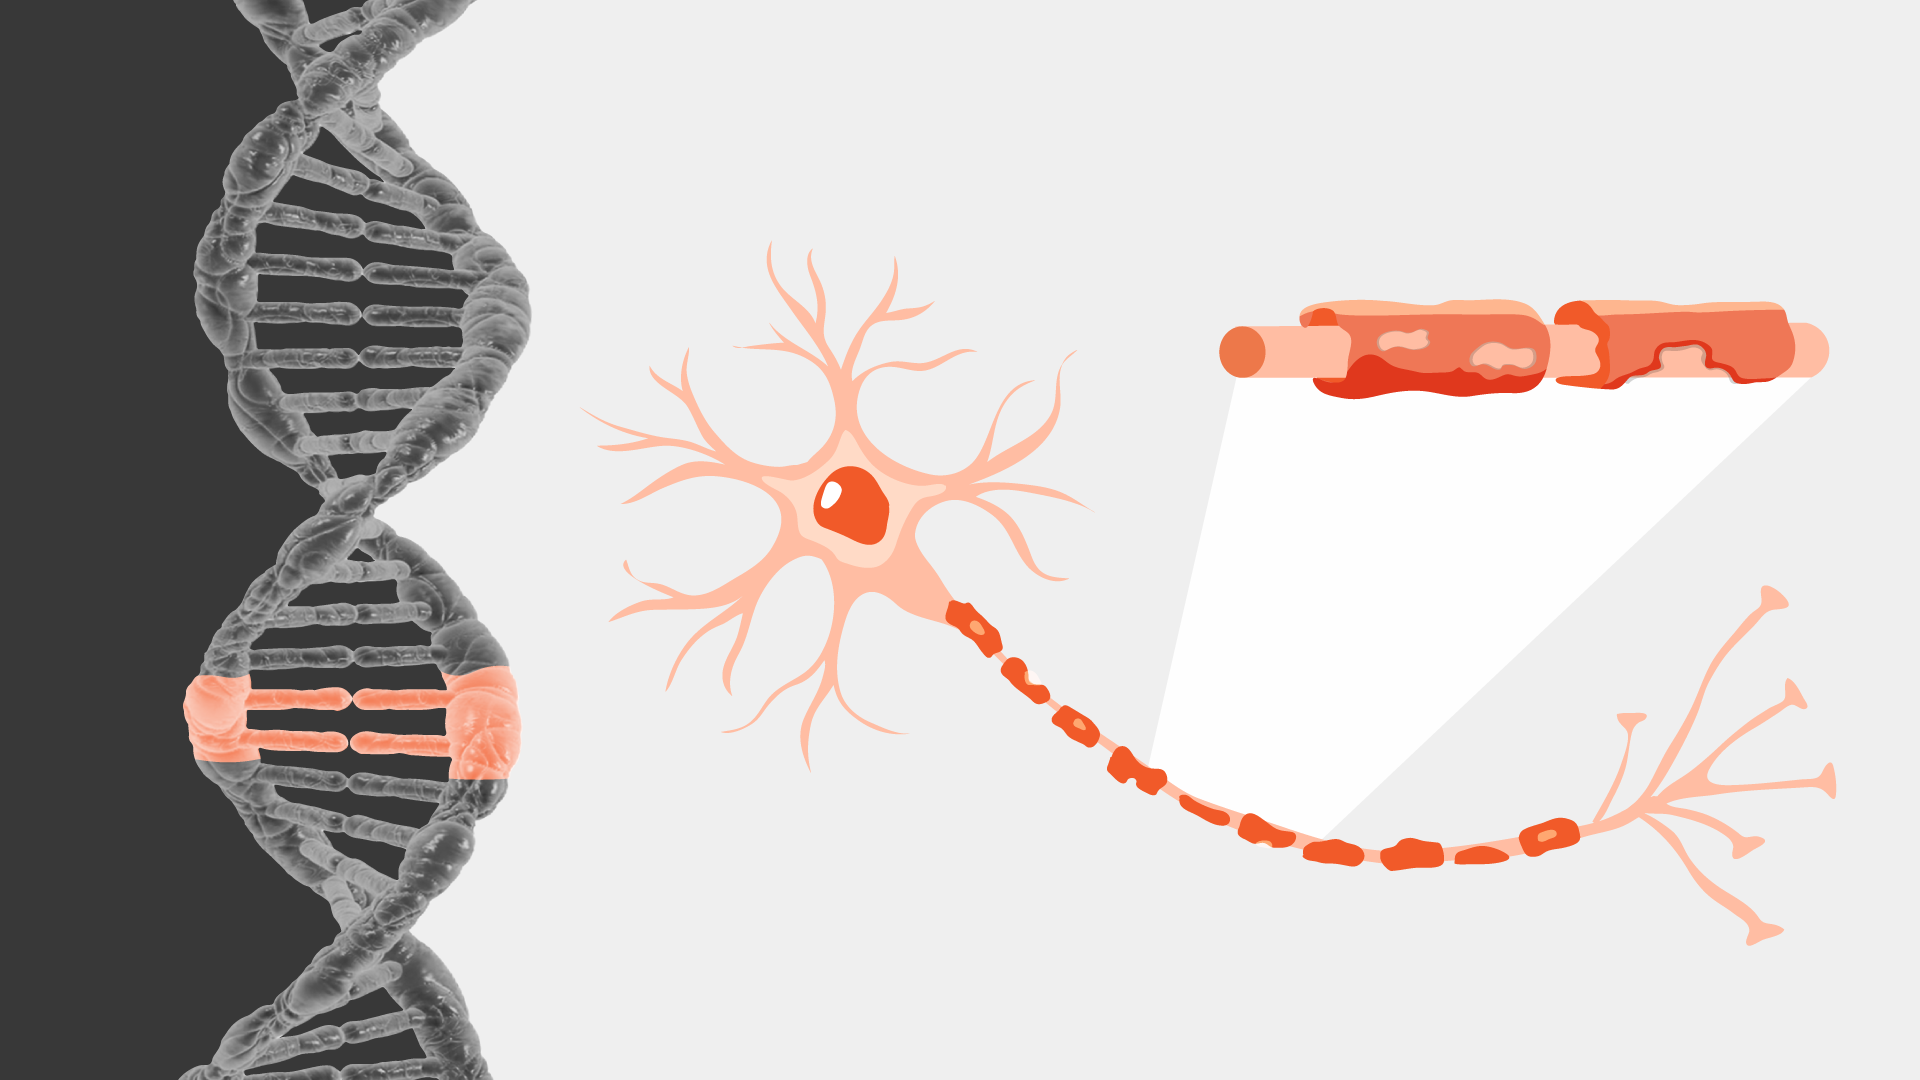 Ilustração de um DNA com mutação genética e um neurônio com bainha de mielina degenerada pela doença adrenoleucodistrofia